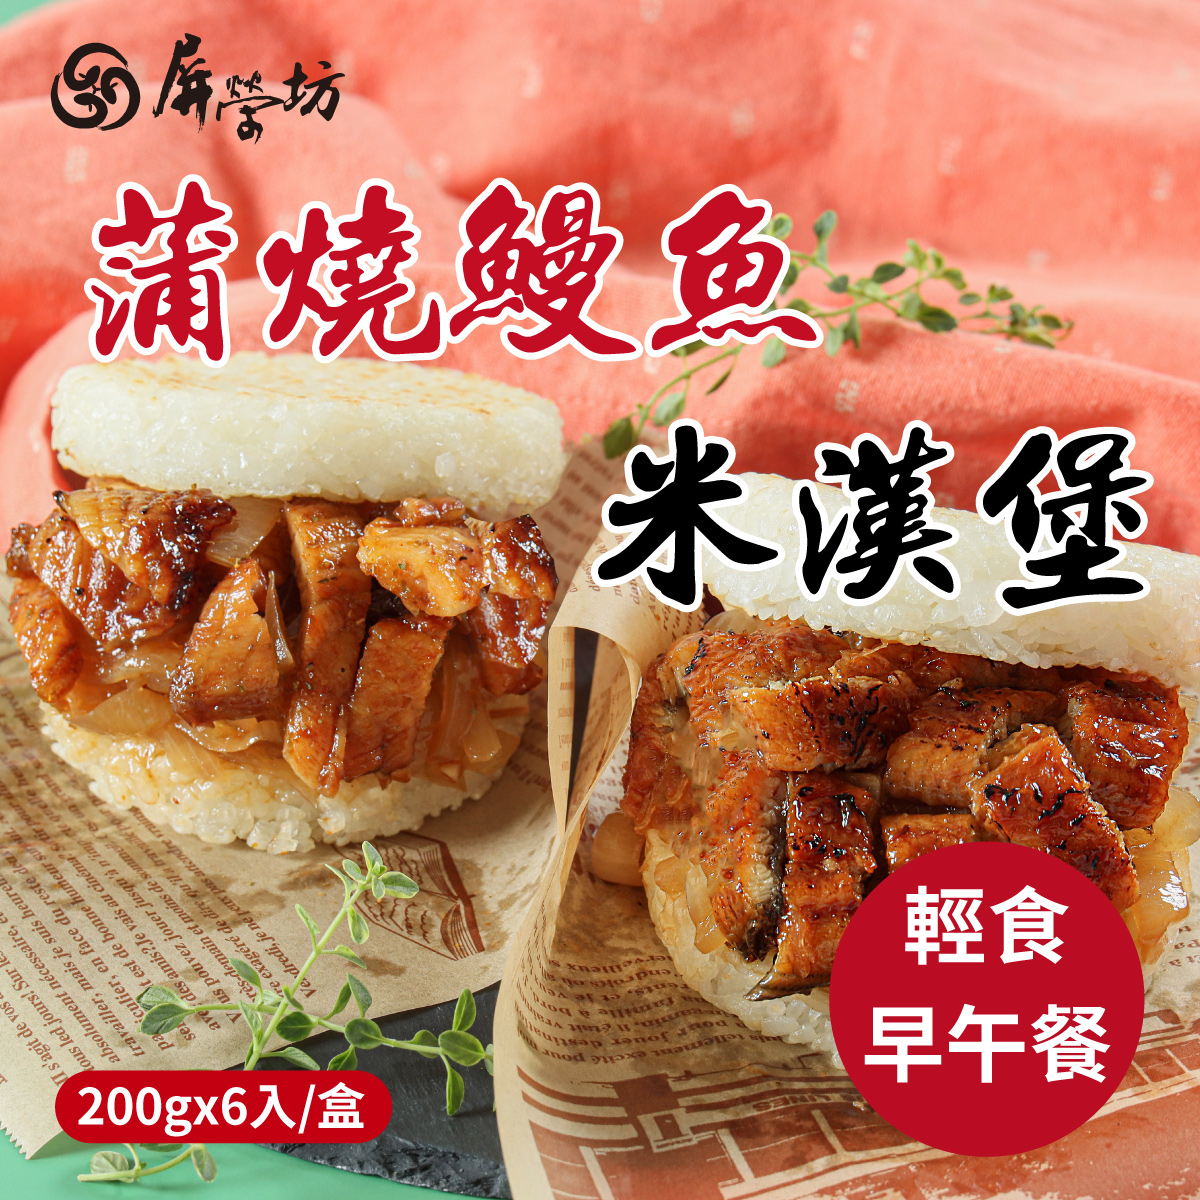 屏榮坊鰻魚十穀米漢堡(200gx6入/盒) 早餐消夜/野餐/伴手禮/漢堡